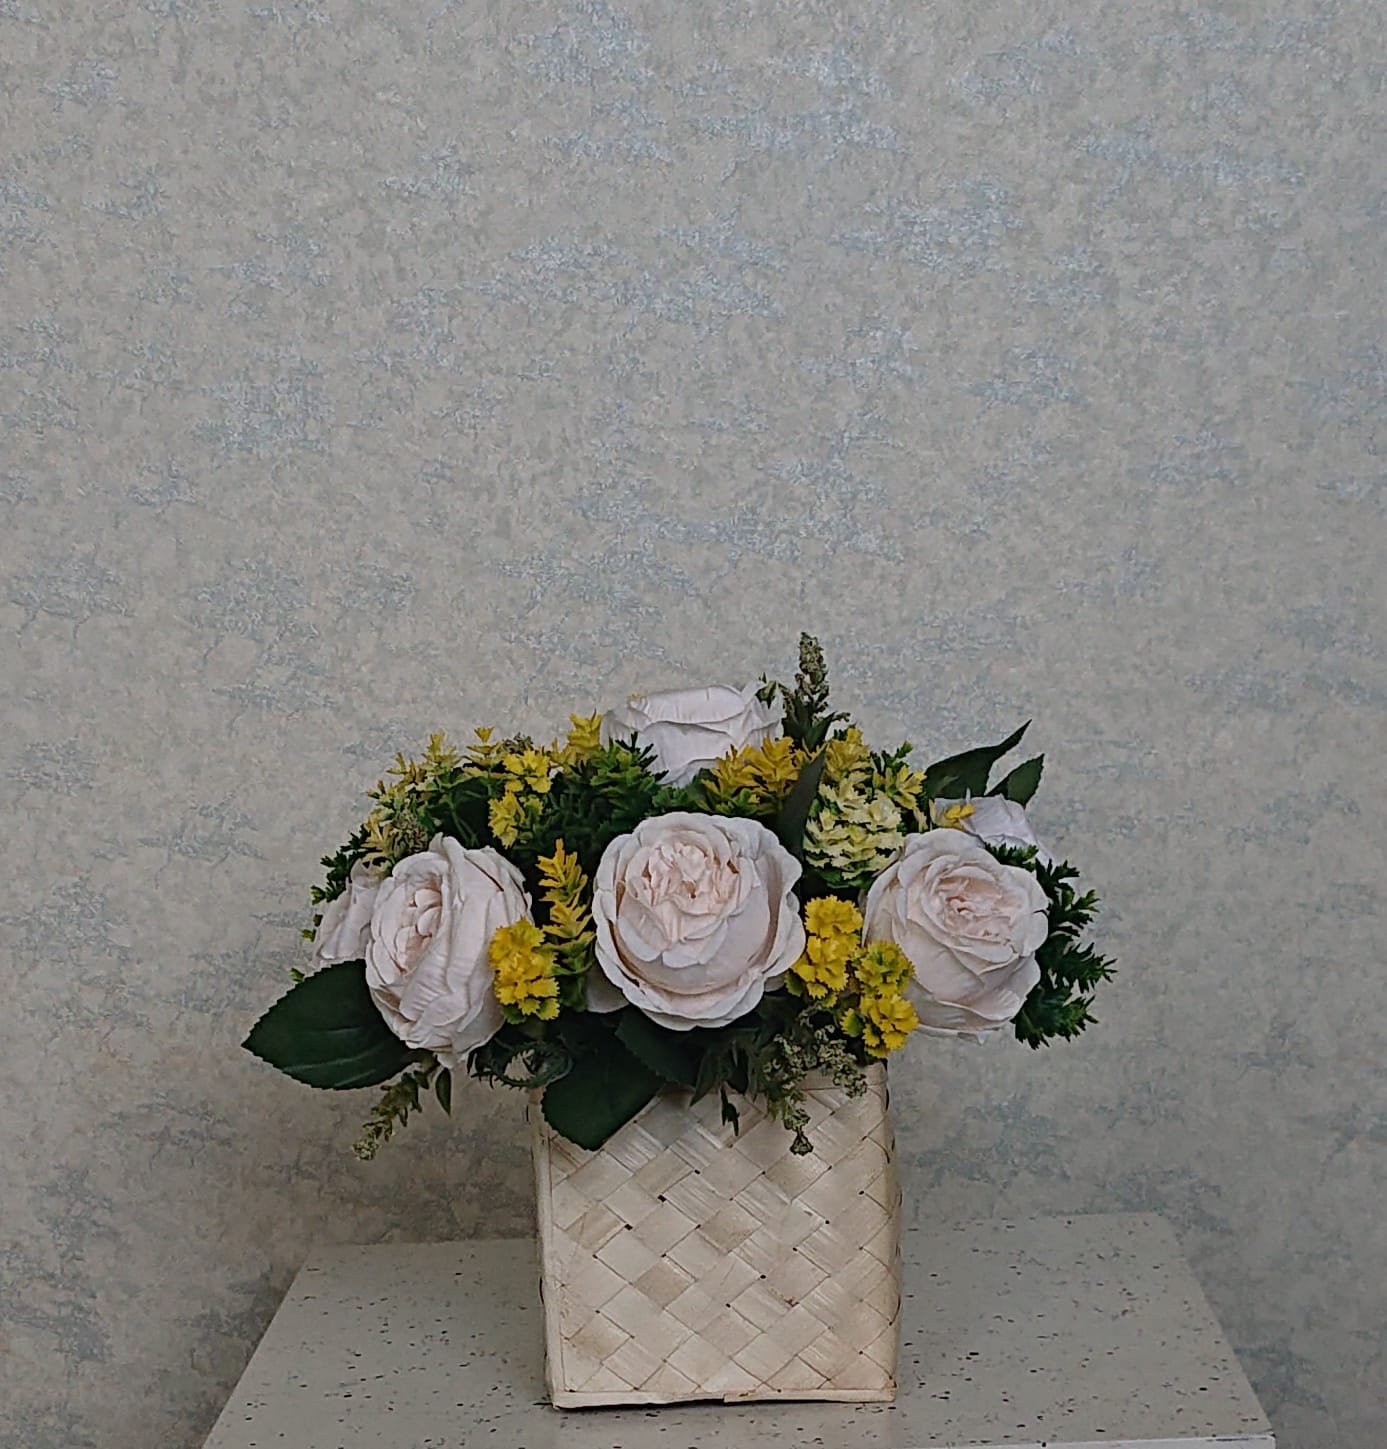 Artificial Floral Arrangement (h:23cm w:28cm)